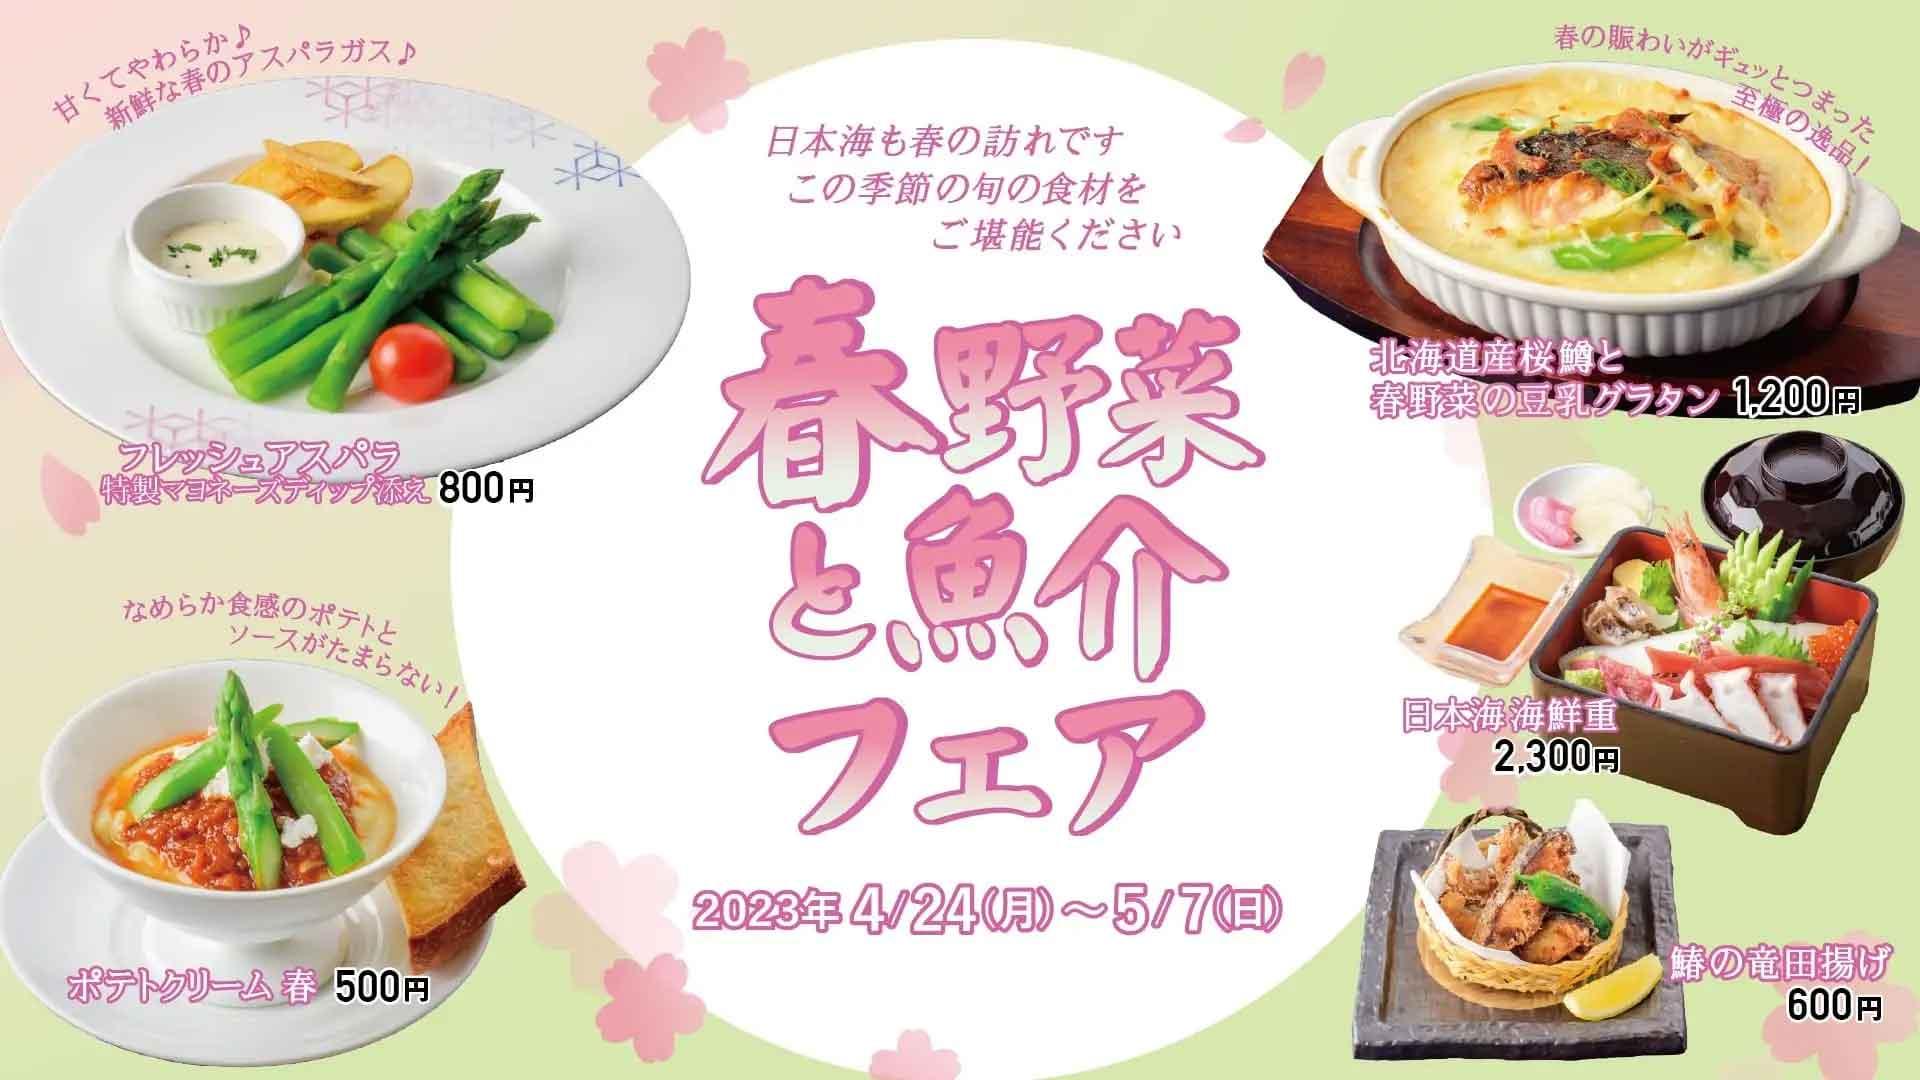 【新日本海フェリー】船内レストランにて”春野菜と魚介フェア”開催